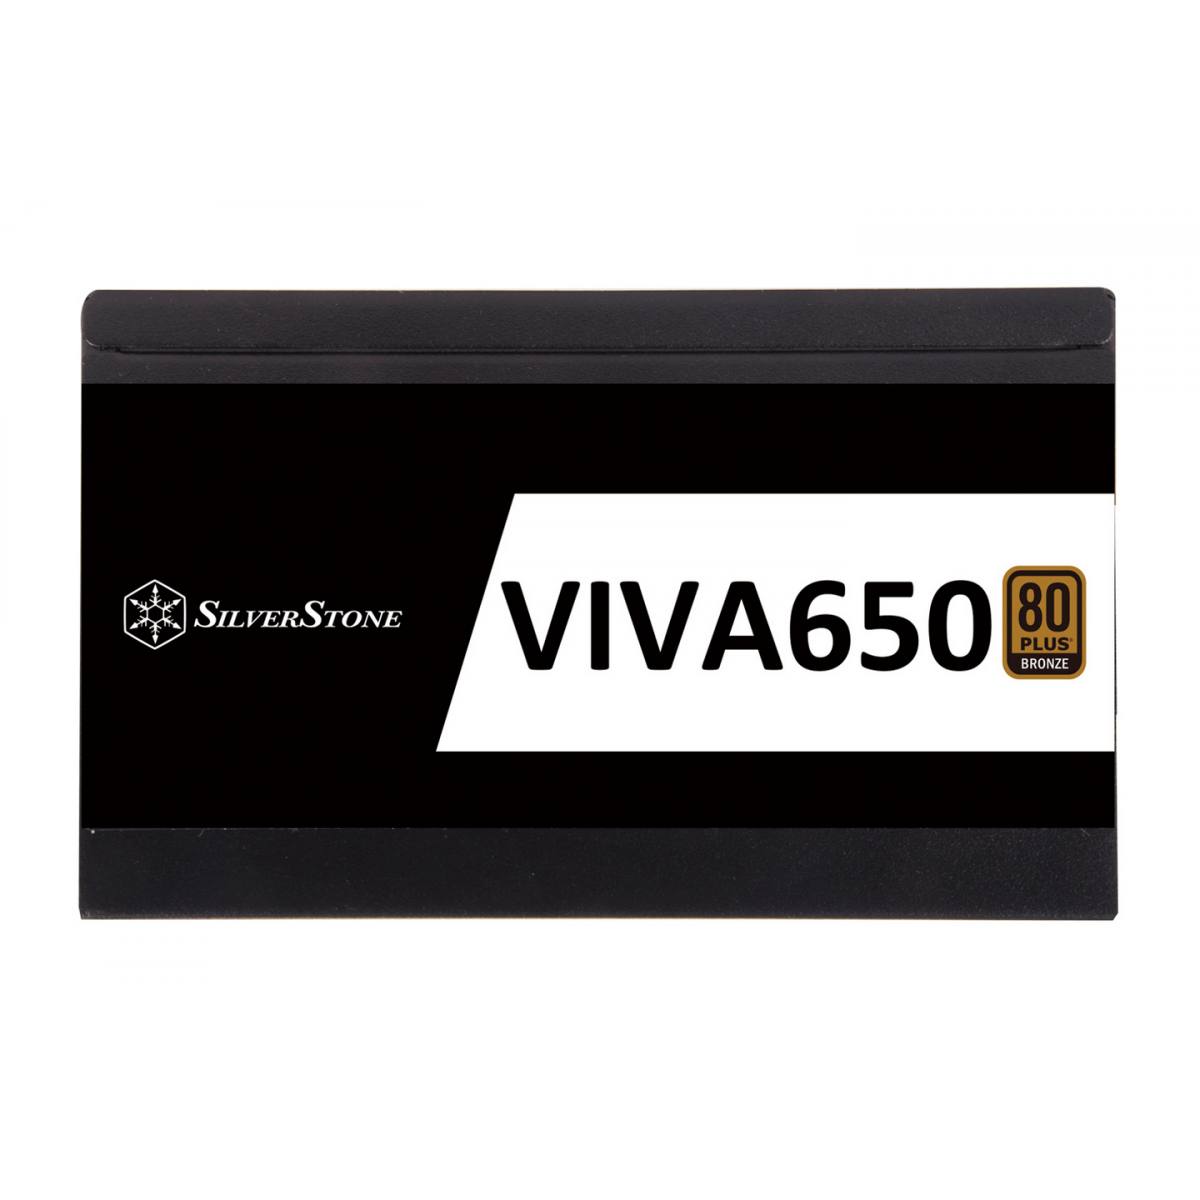 Nguồn Silverstone Viva 650 - 80 Plus Bronze